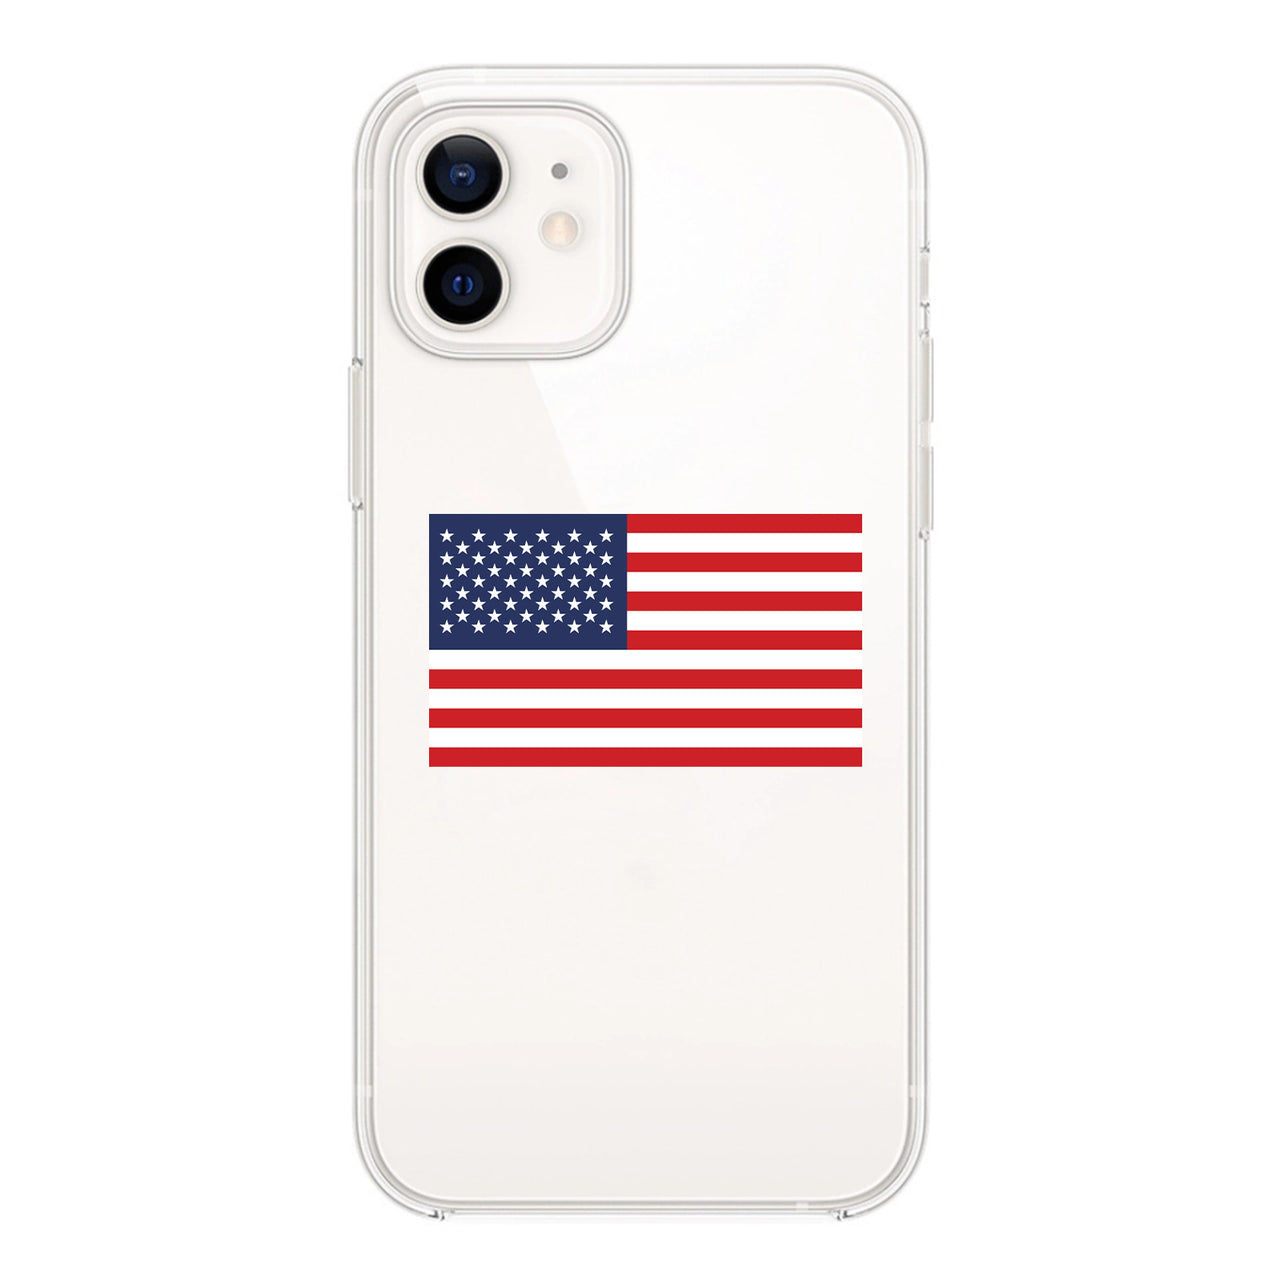 USA Designed Transparent Silicone iPhone Cases